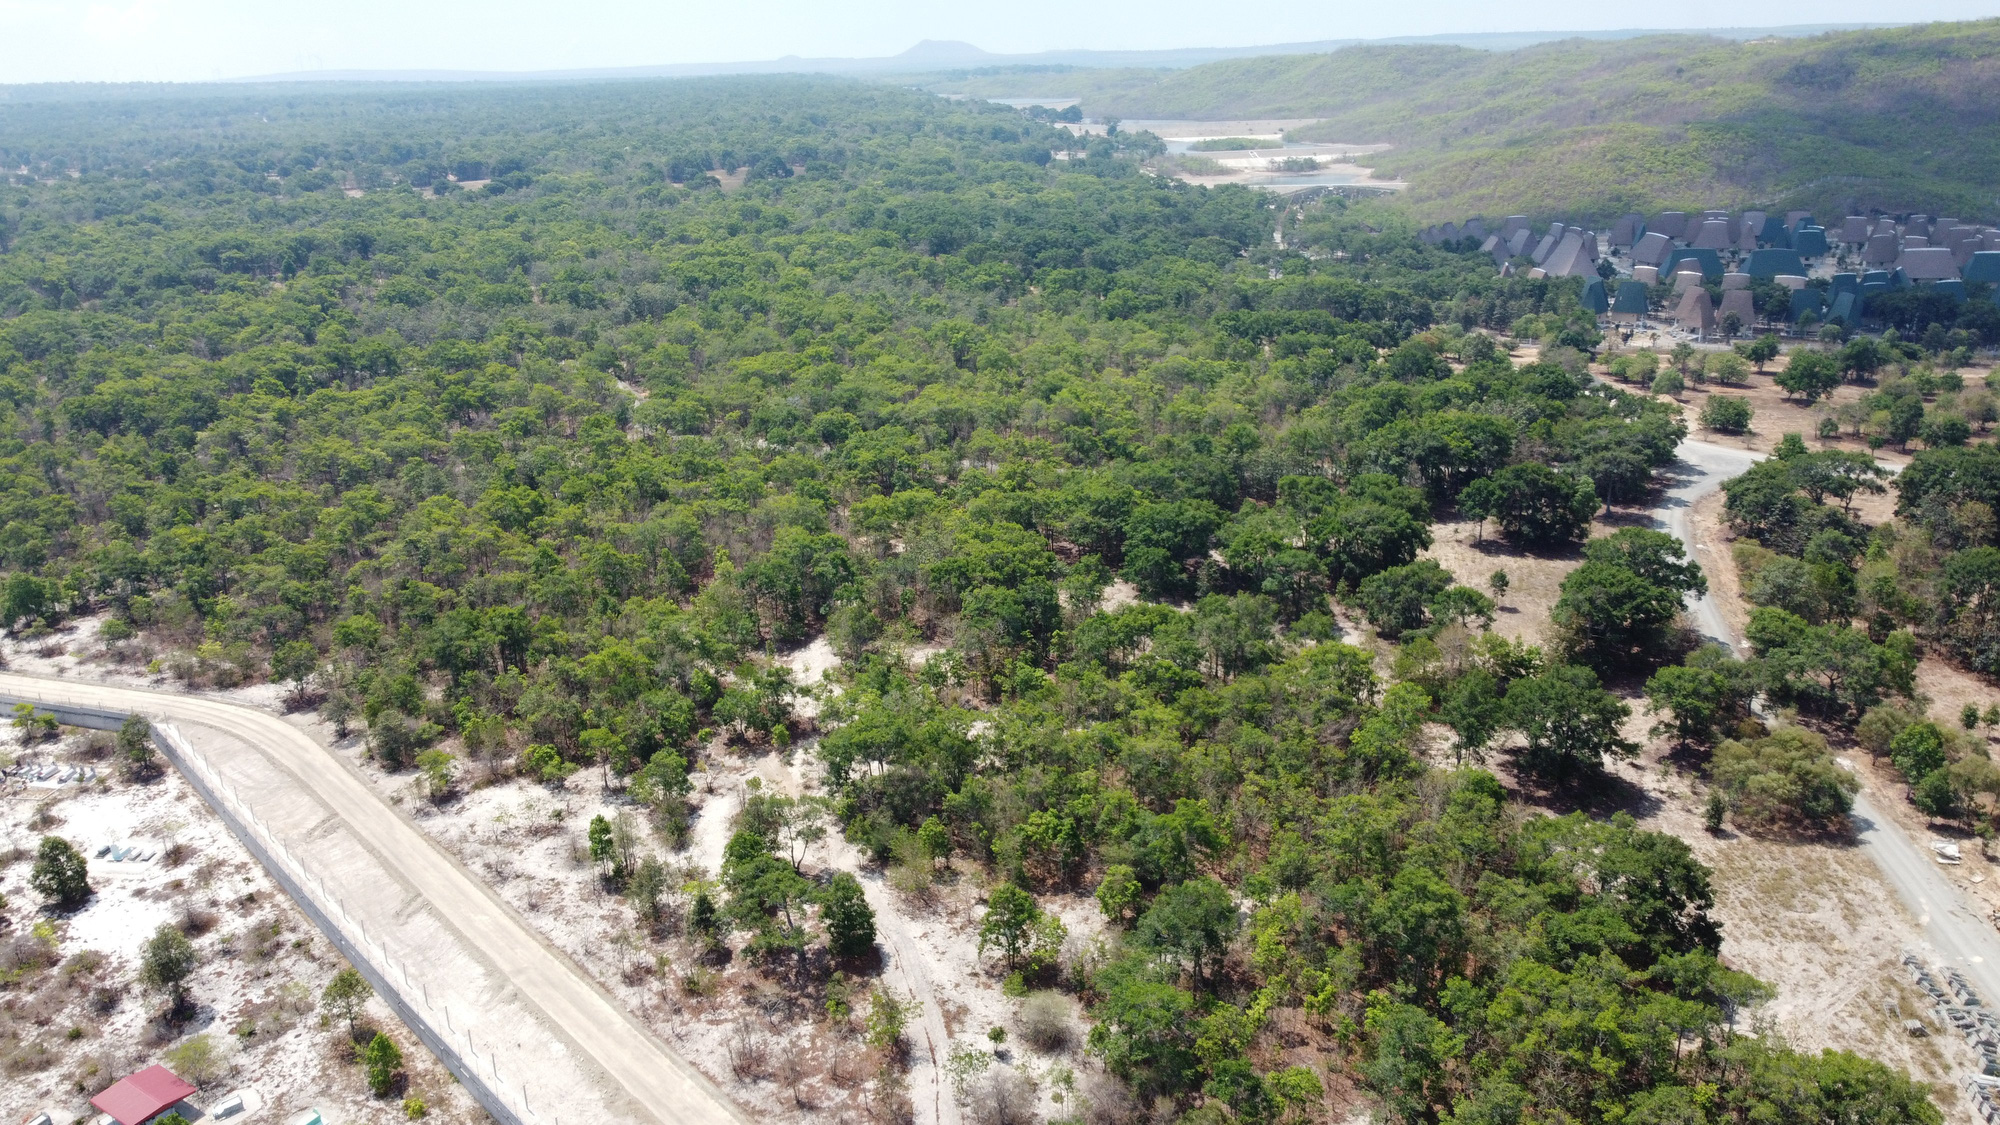 Bộ Công an tiếp tục kiểm tra, thực địa dự án rừng dầu Hồng Liêm của Tập đoàn Rạng Đông ở Bình Thuận - Ảnh 1.